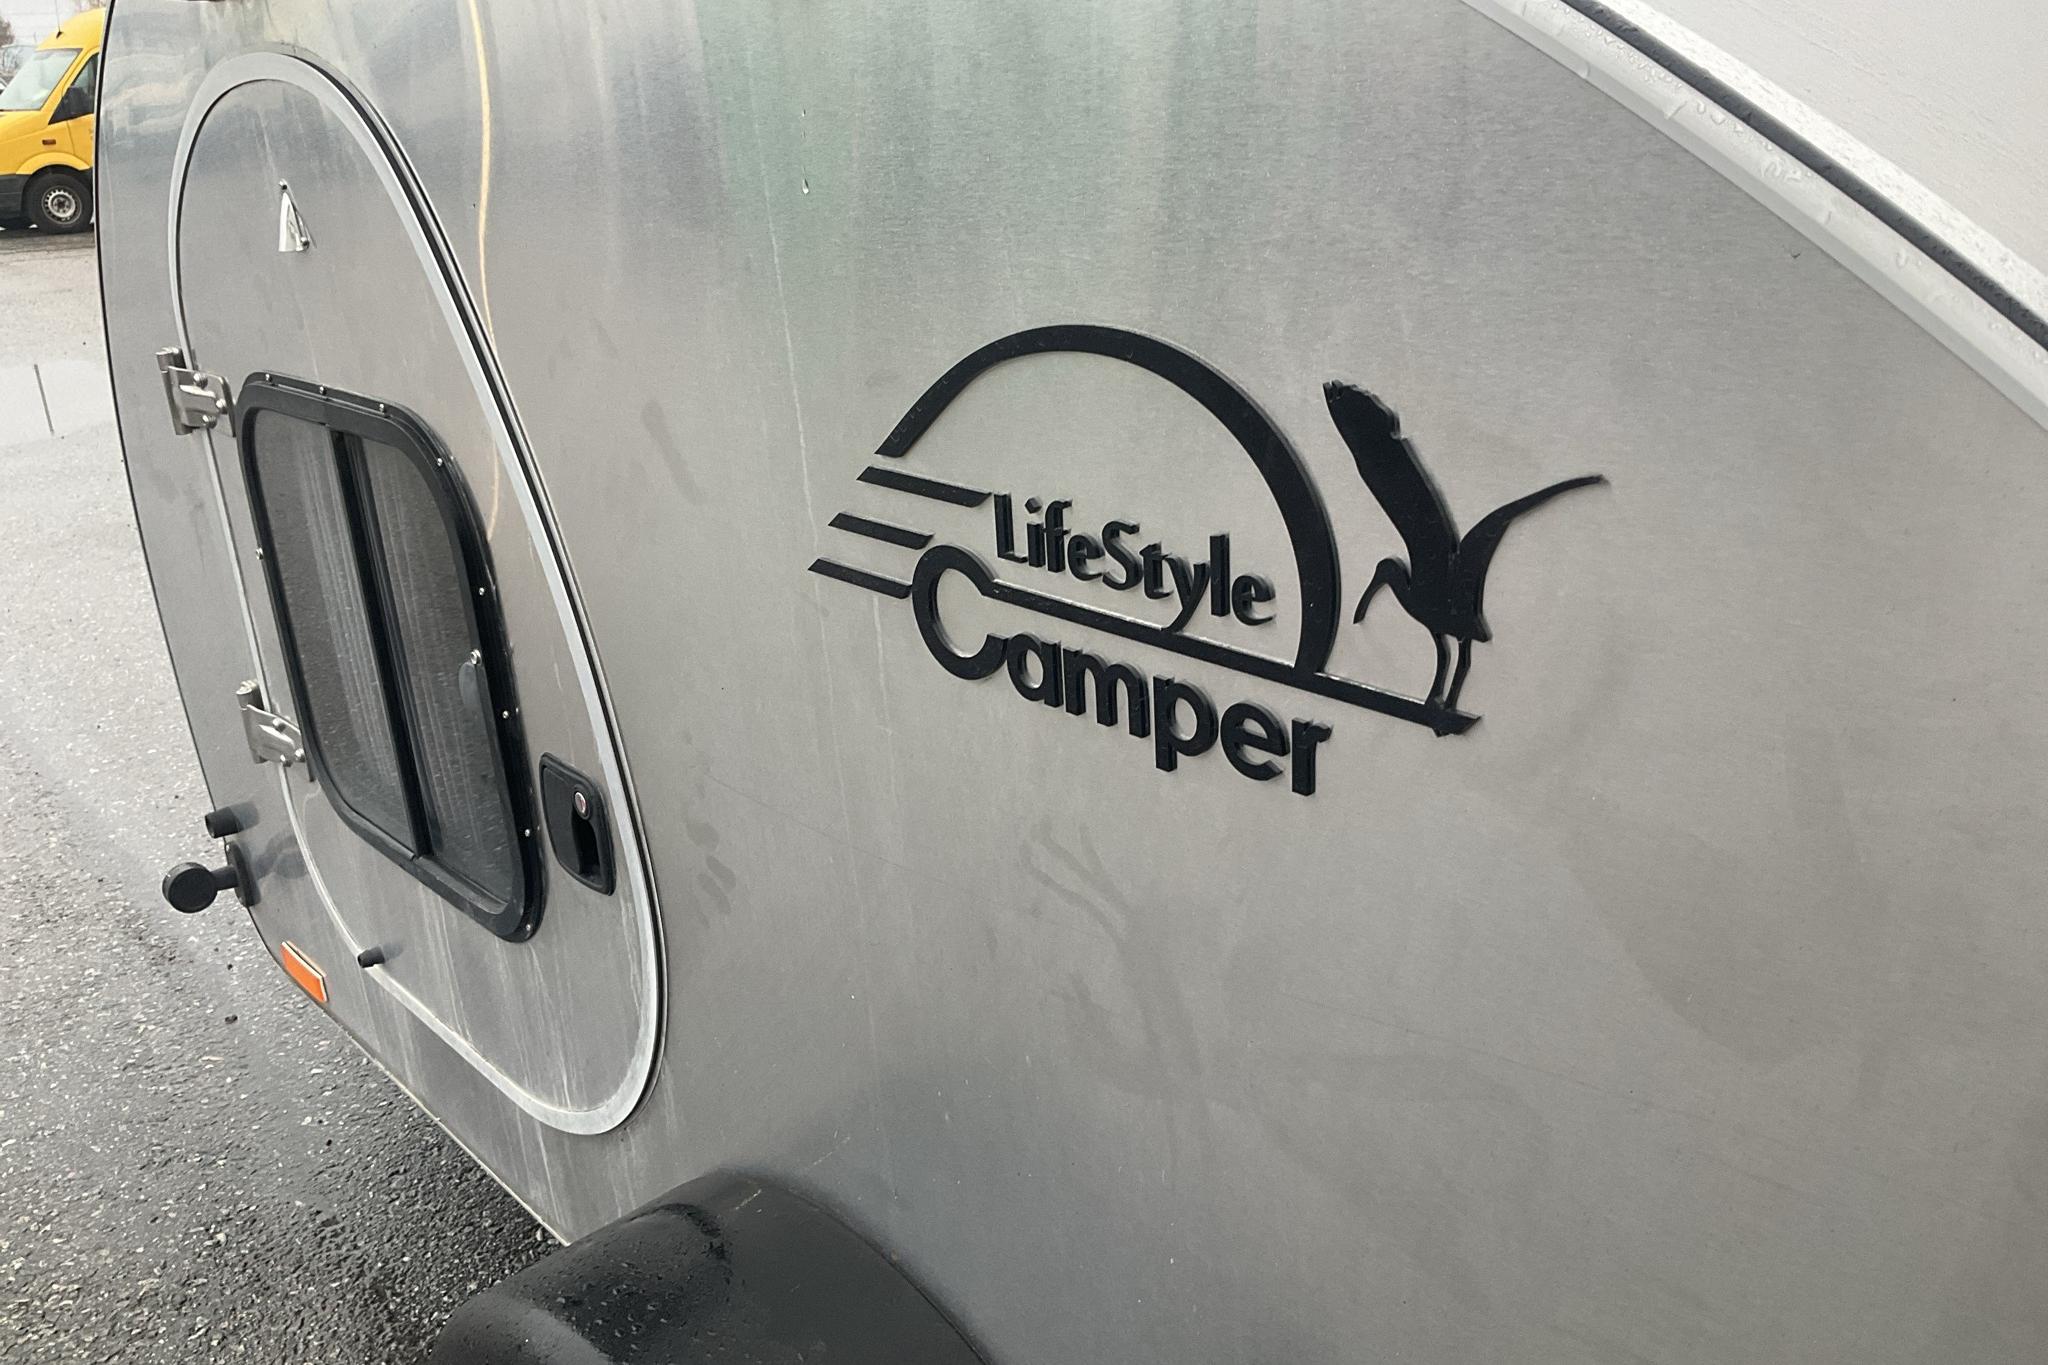 LifeStyleCamper SteelDrop Campersläpvagn - 0 km - silver - 2020